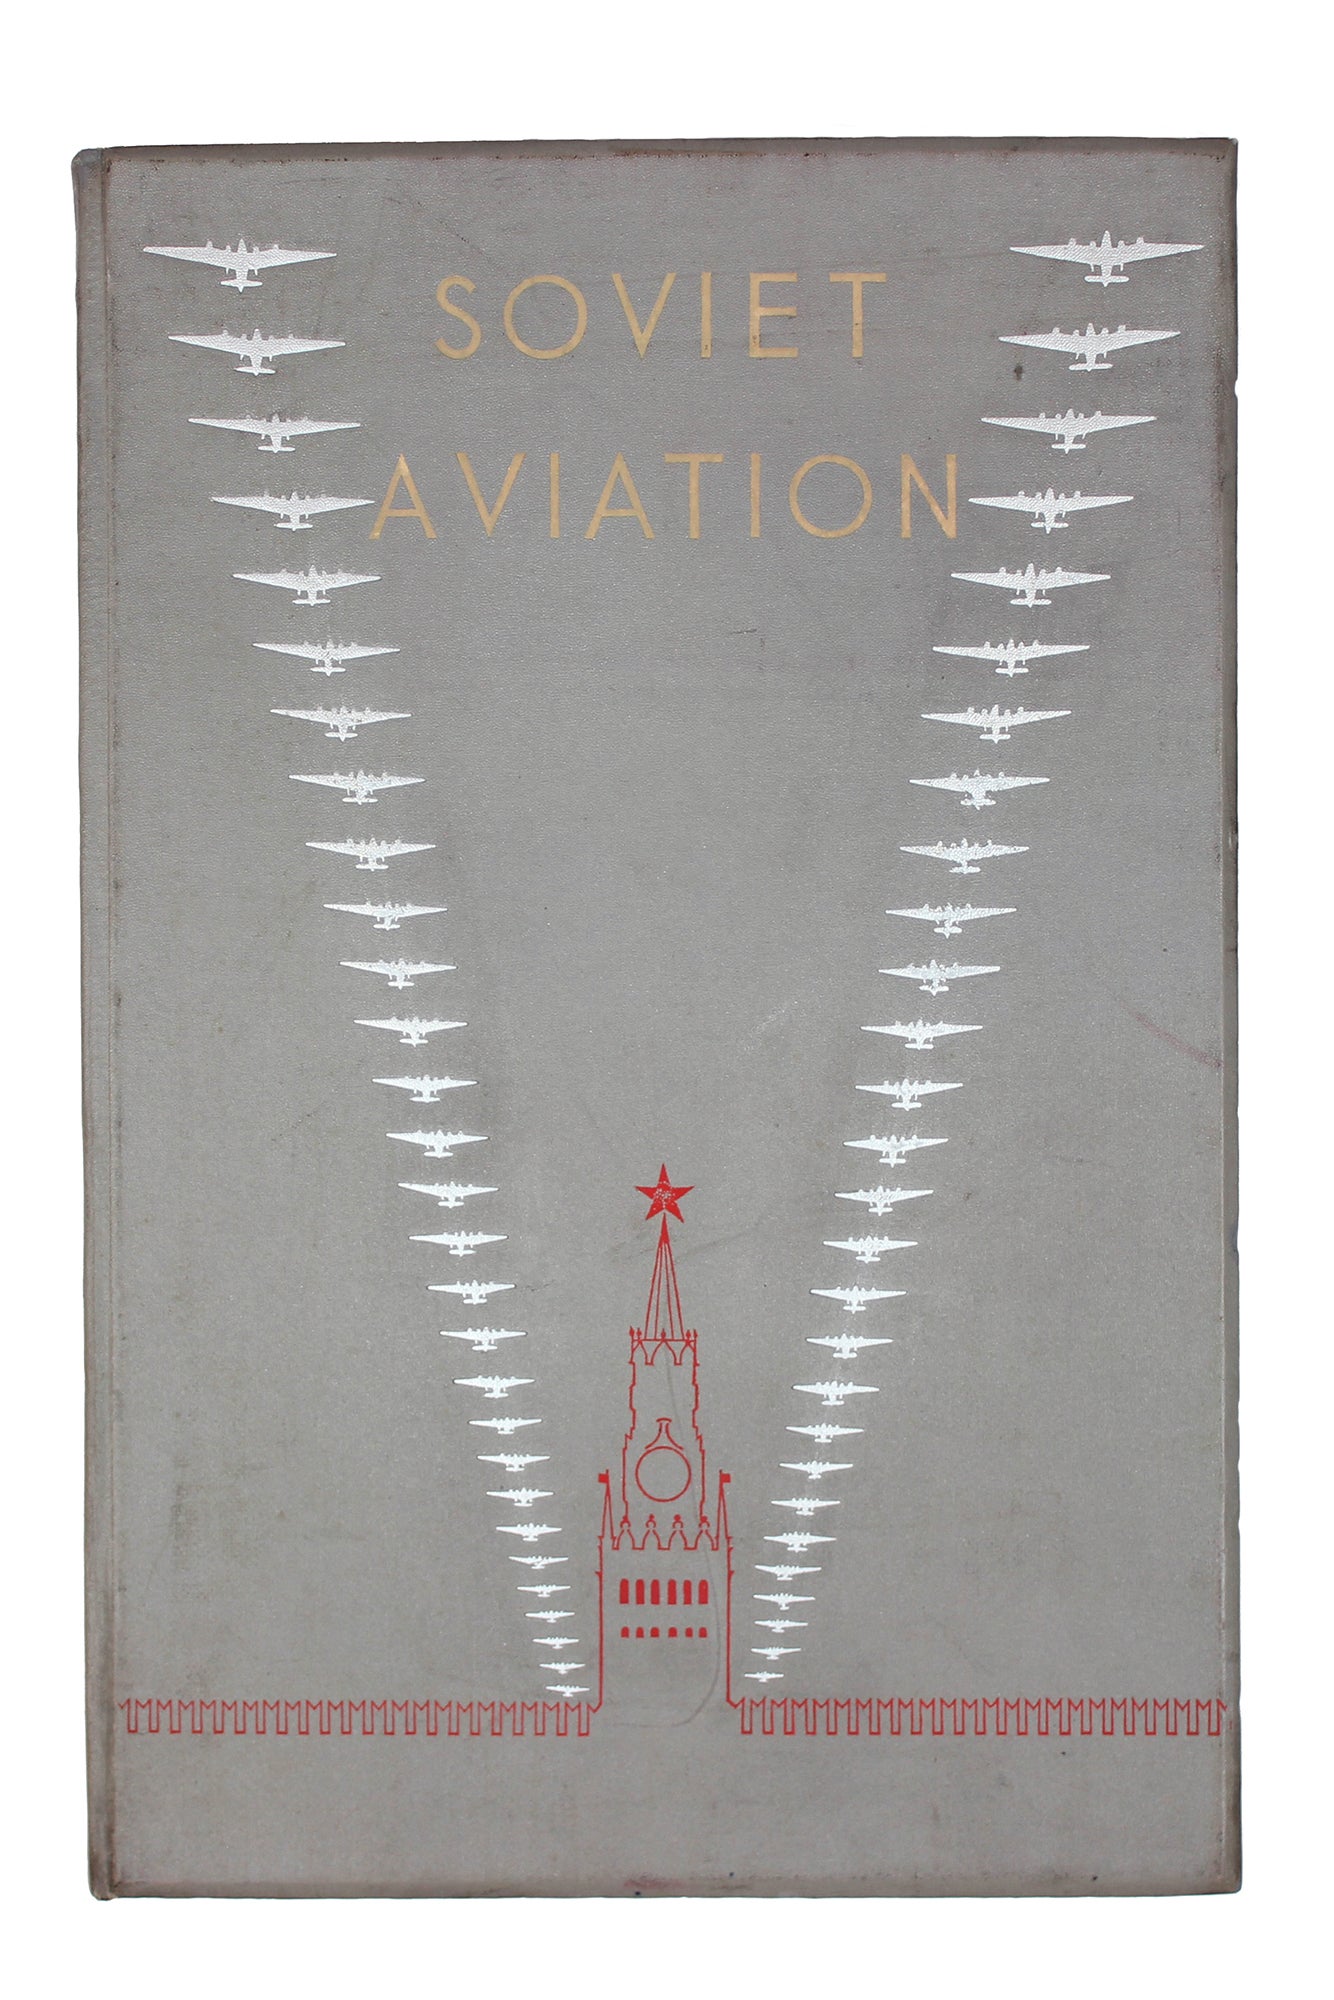 PARADE EDITION BY RODCHENKO AND STEPANOVA Soviet Aviation